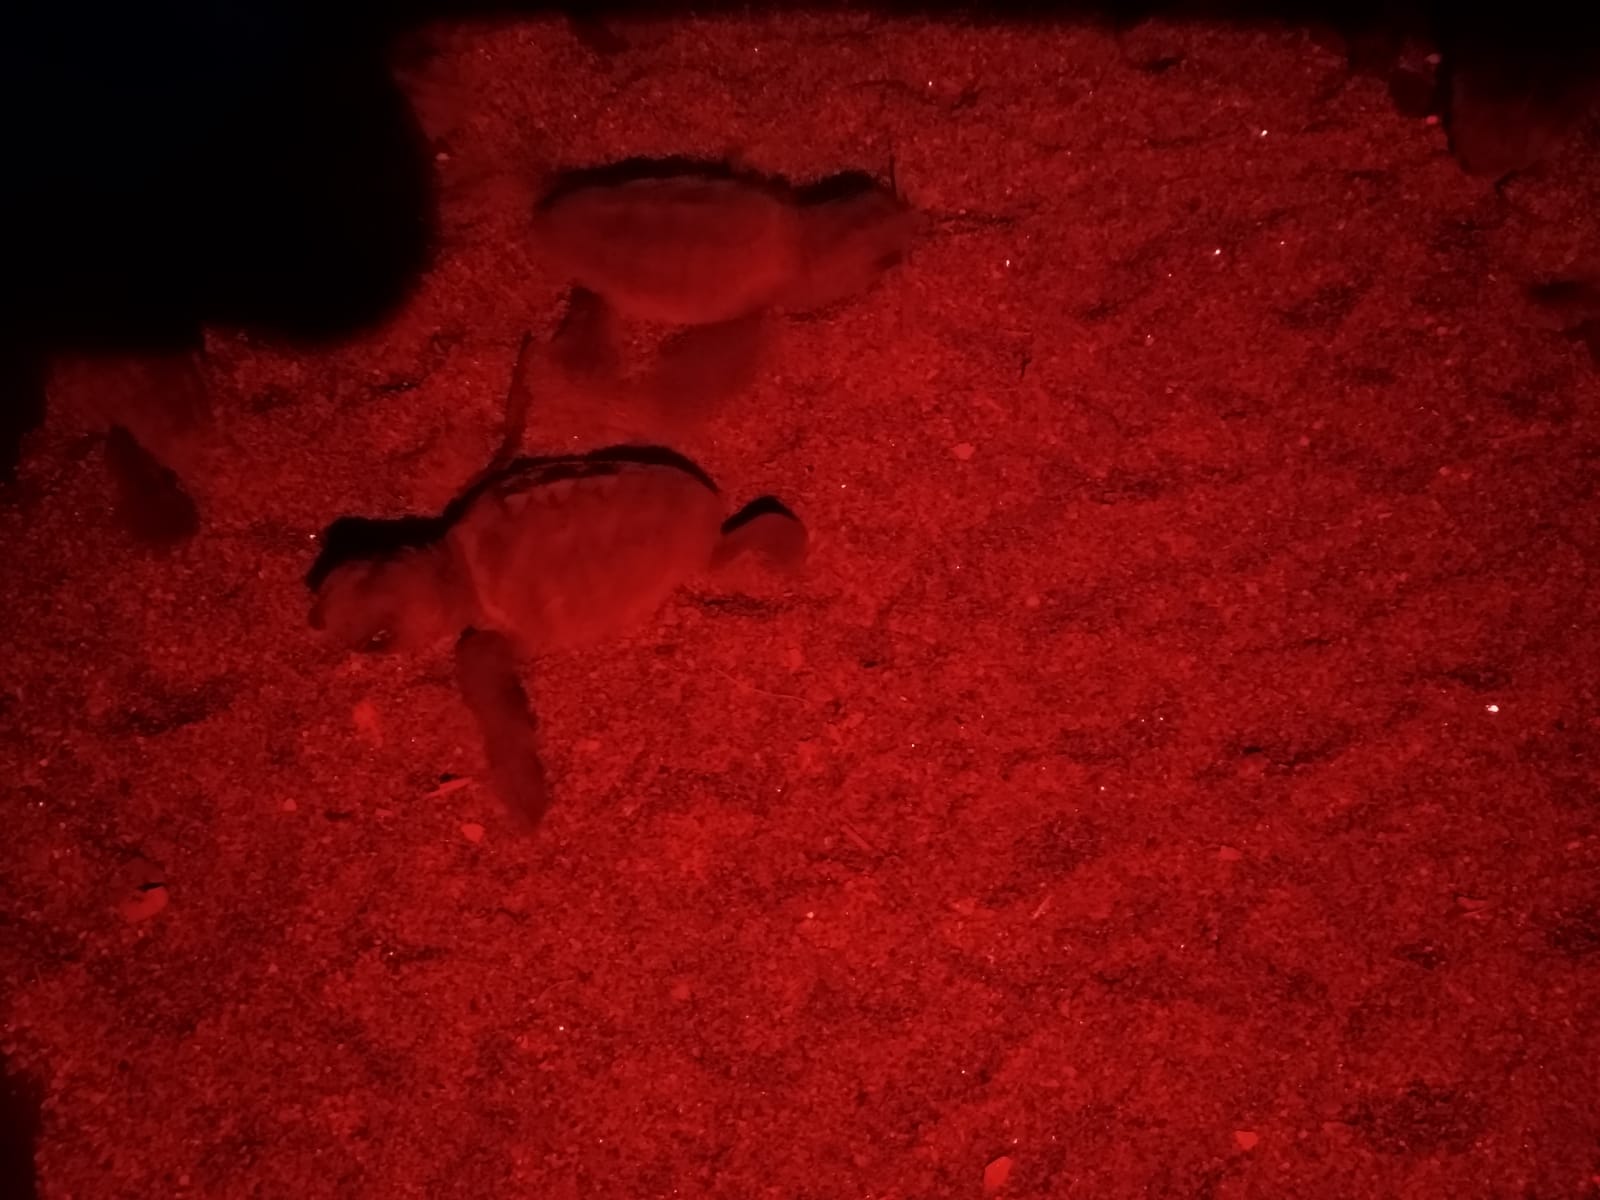 Evento eccezionale in penisola sorrentina: nate decine di tartarughe sulla spiaggia di Meta